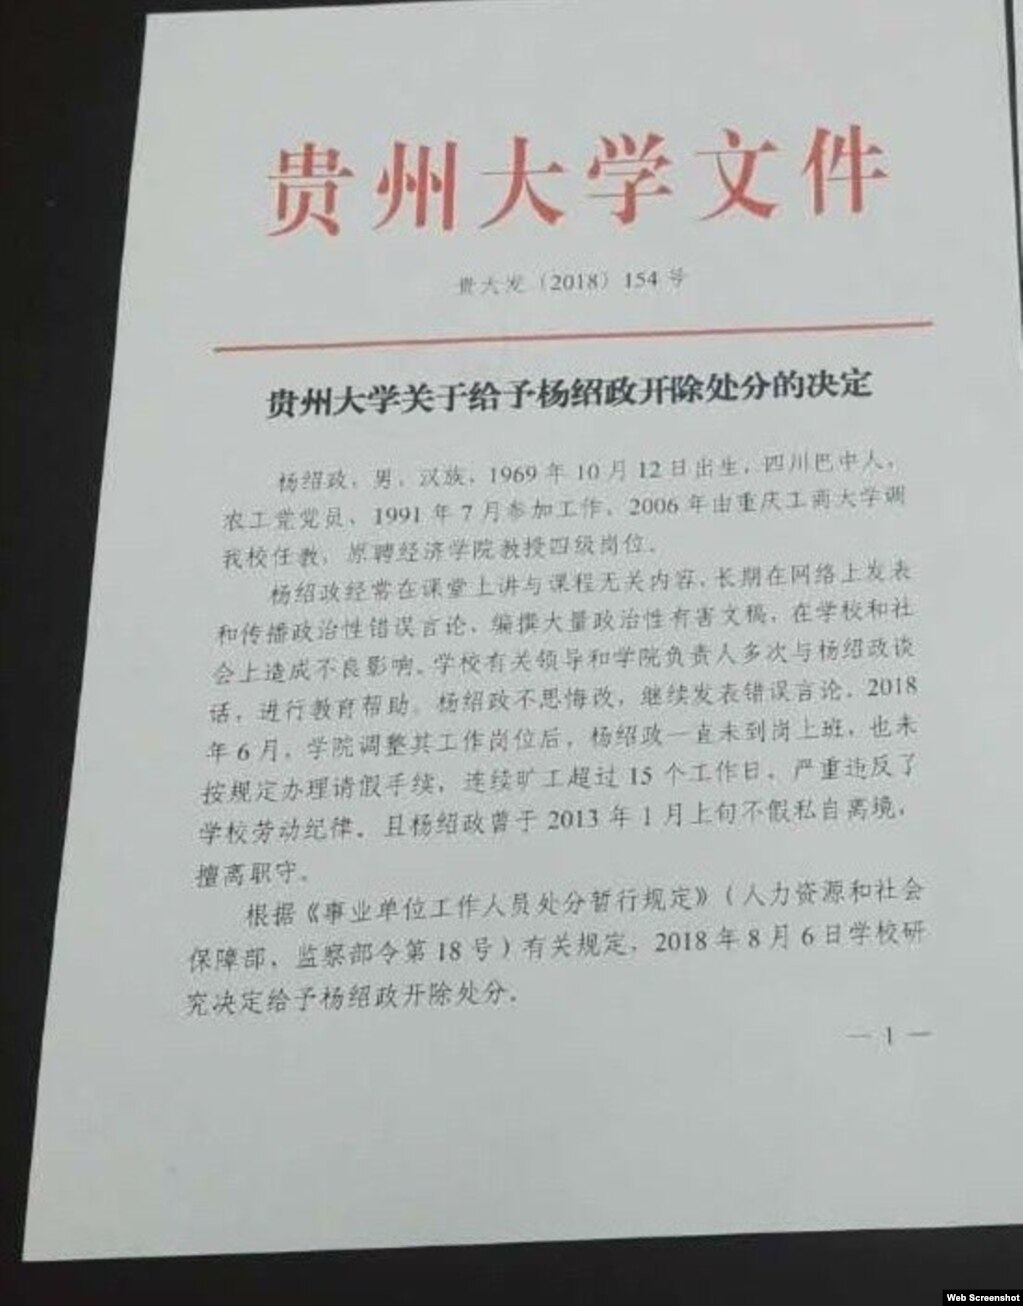 “贵州大学关于给予杨绍政开除处分的决定”红头文件(photo:VOA)